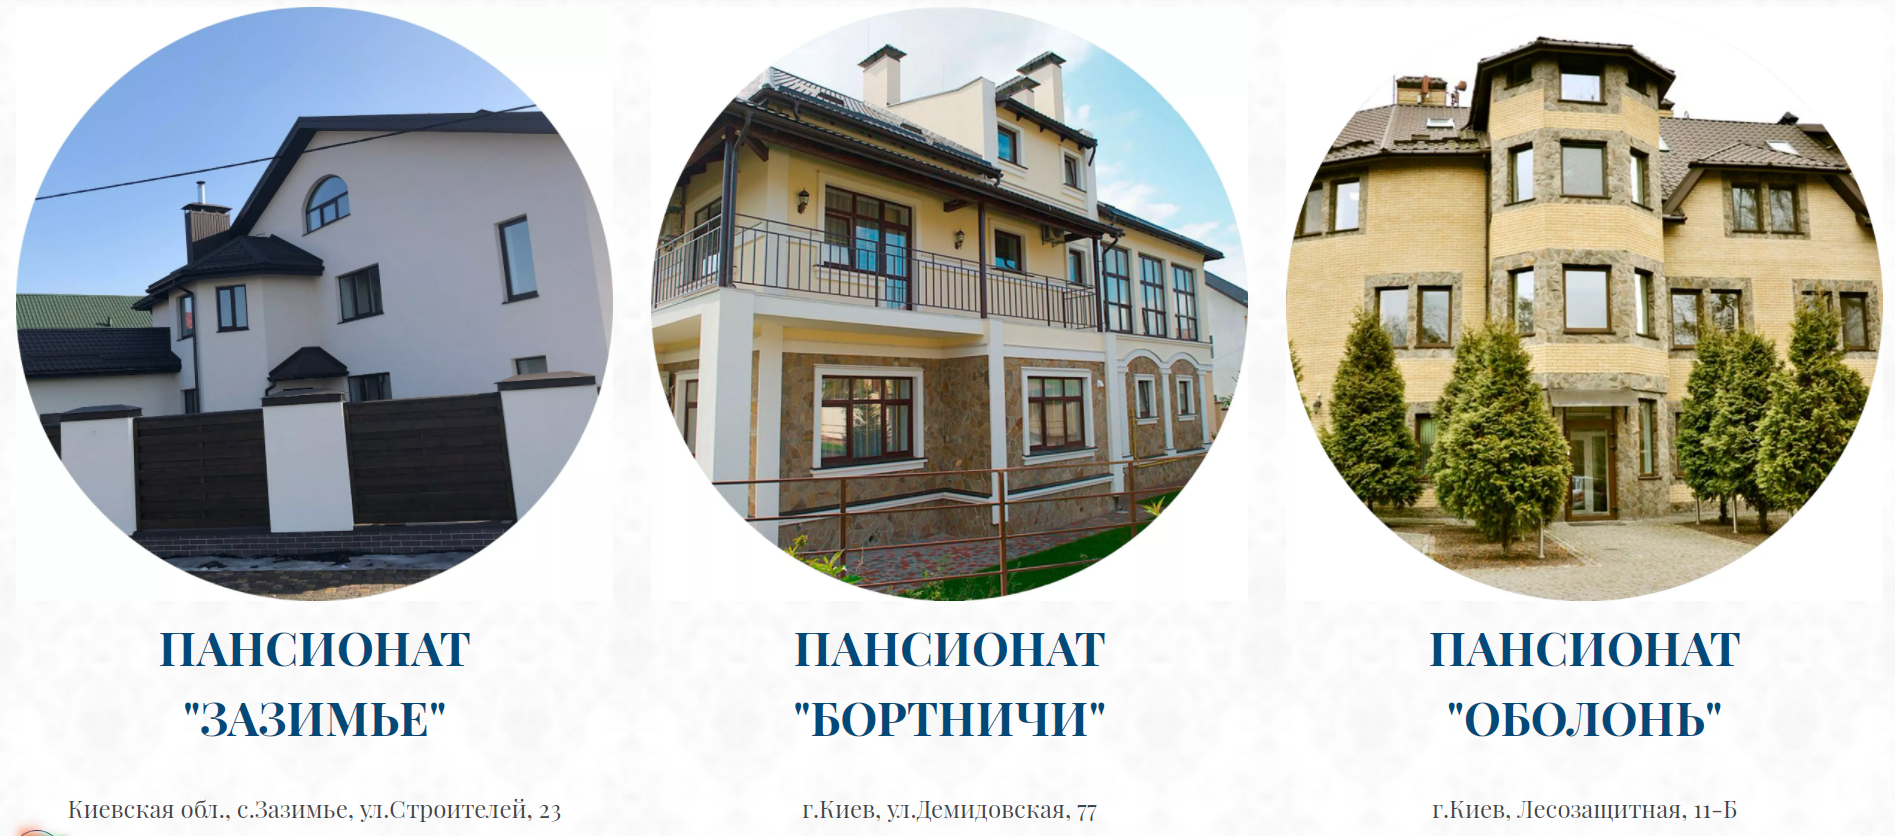 "Оболонь" также входит в сеть домов престарелых "Серебряный век"